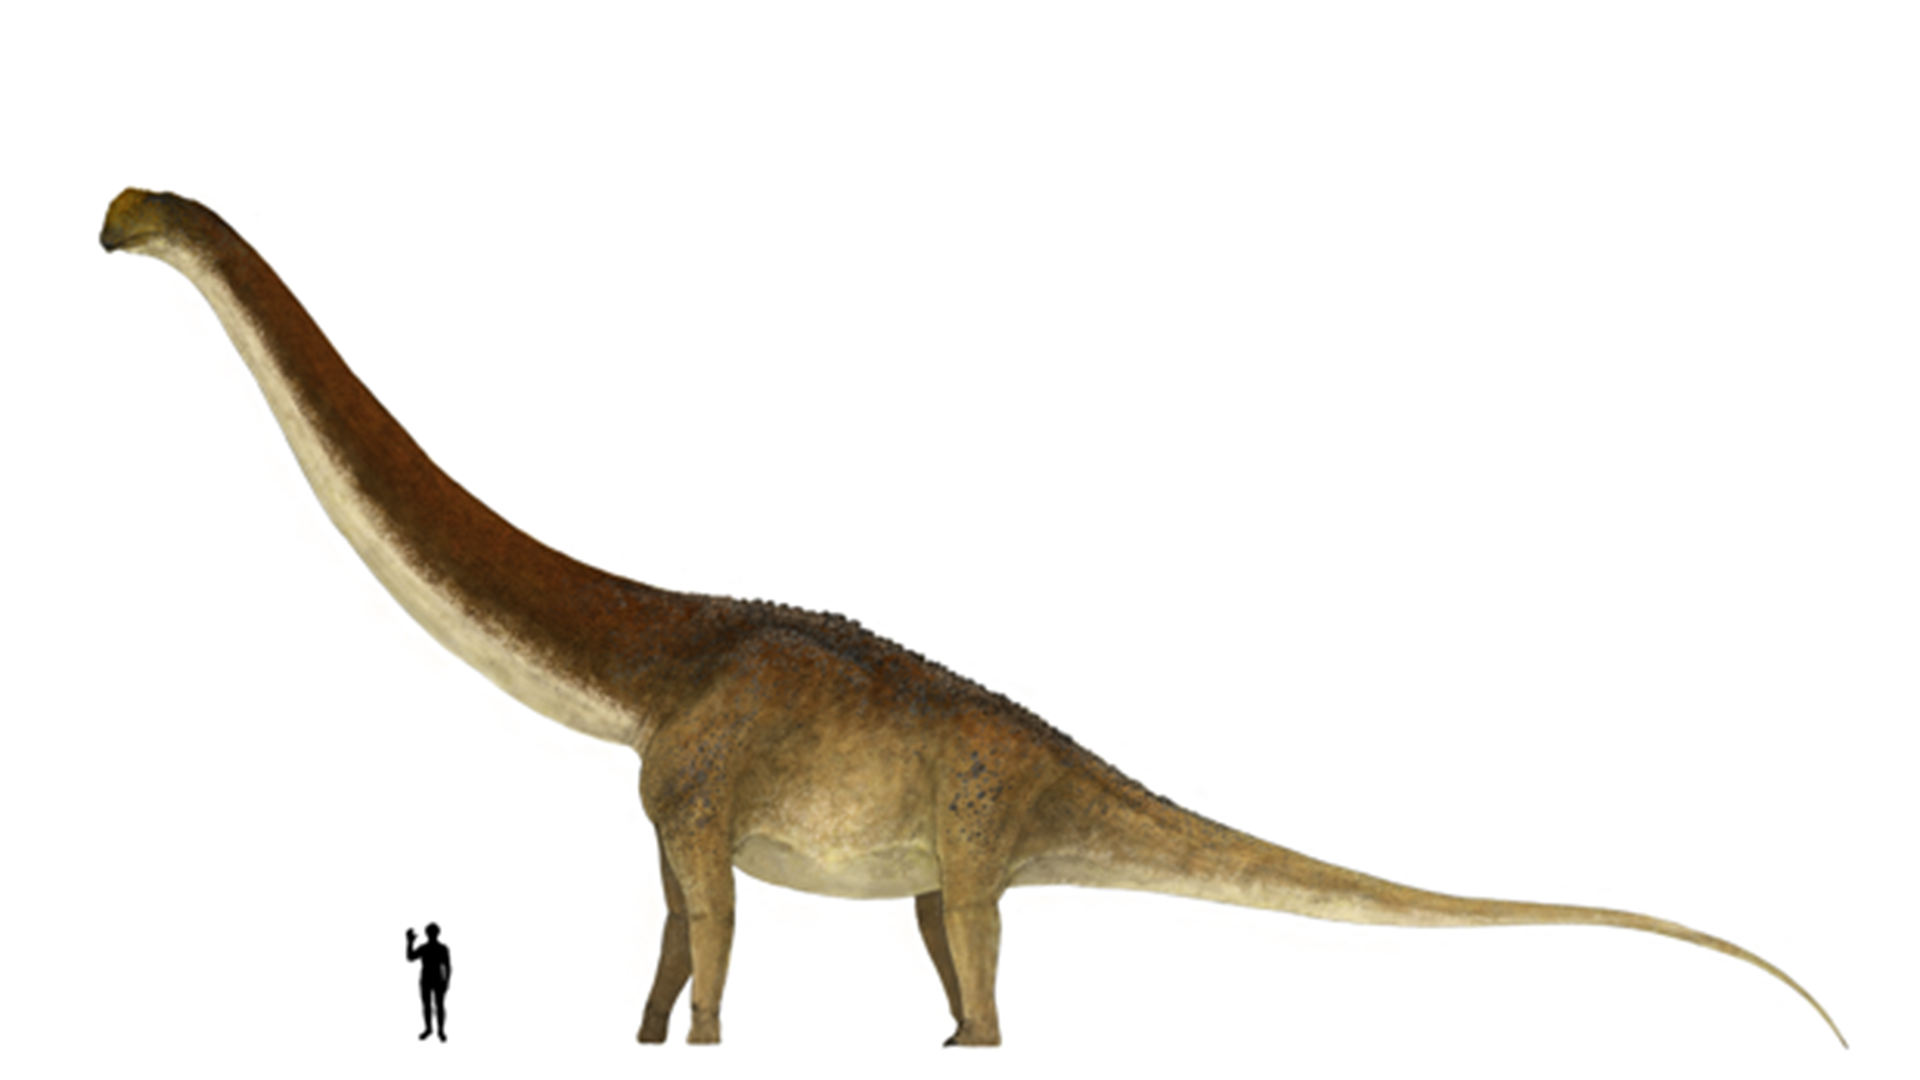 Los huesos encontrados indicarían que es mayor que otras especies similares halladas en la zona, cuna de los dinosaurios más gigantescos que se conocen (Cretaceus Research)